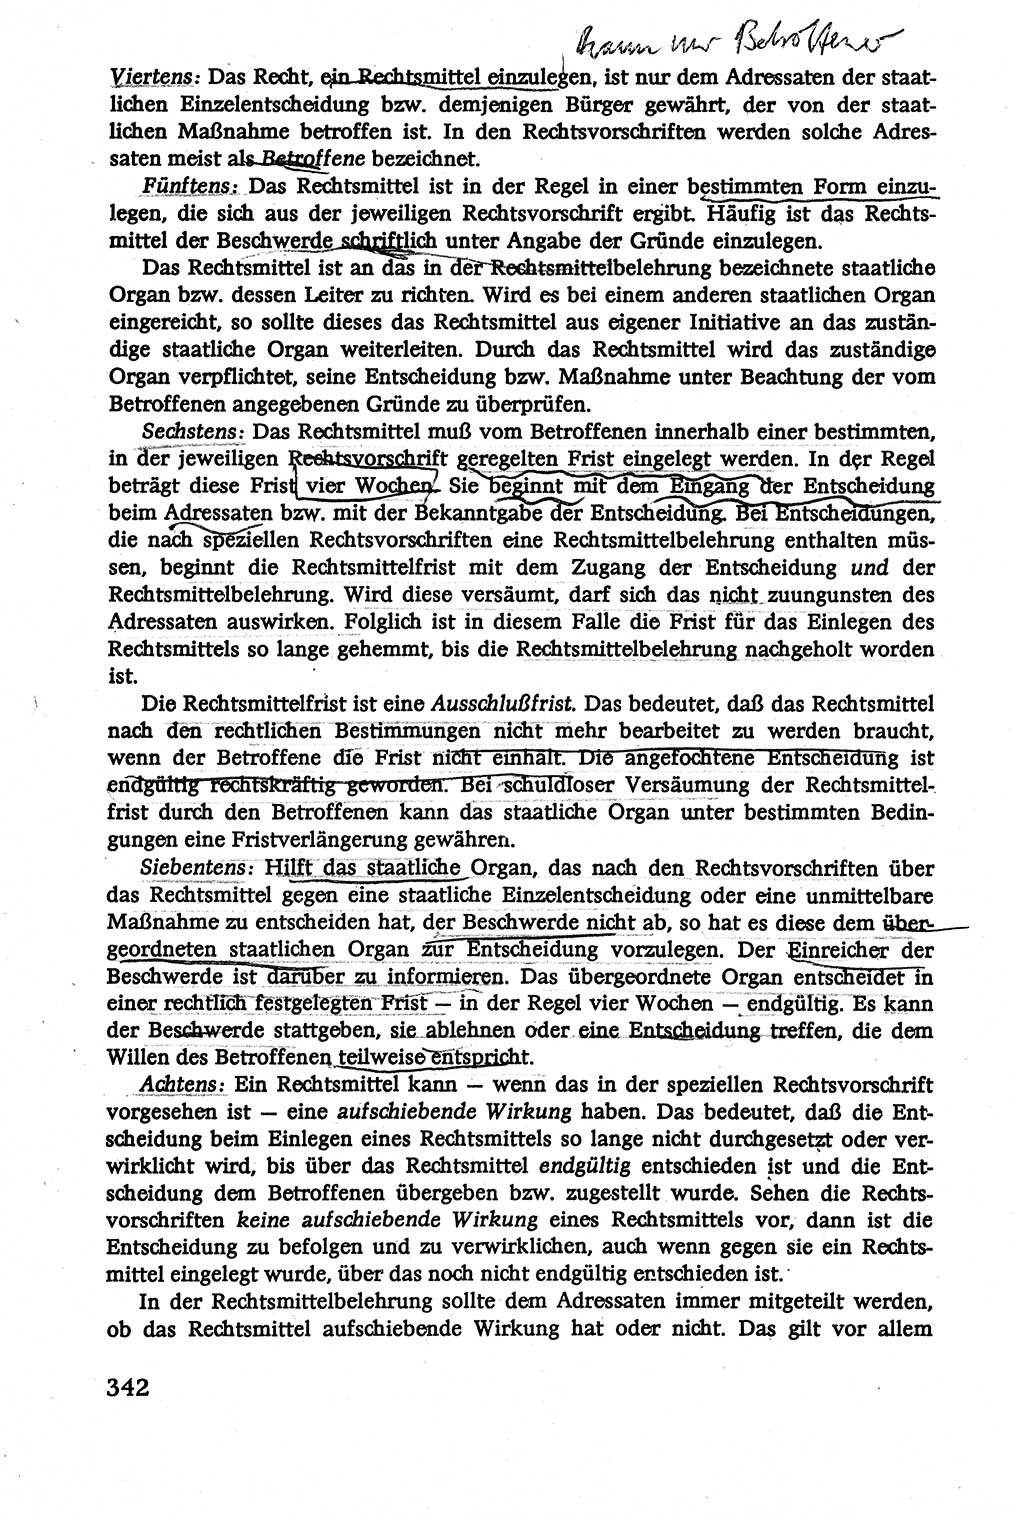 Verwaltungsrecht [Deutsche Demokratische Republik (DDR)], Lehrbuch 1979, Seite 342 (Verw.-R. DDR Lb. 1979, S. 342)